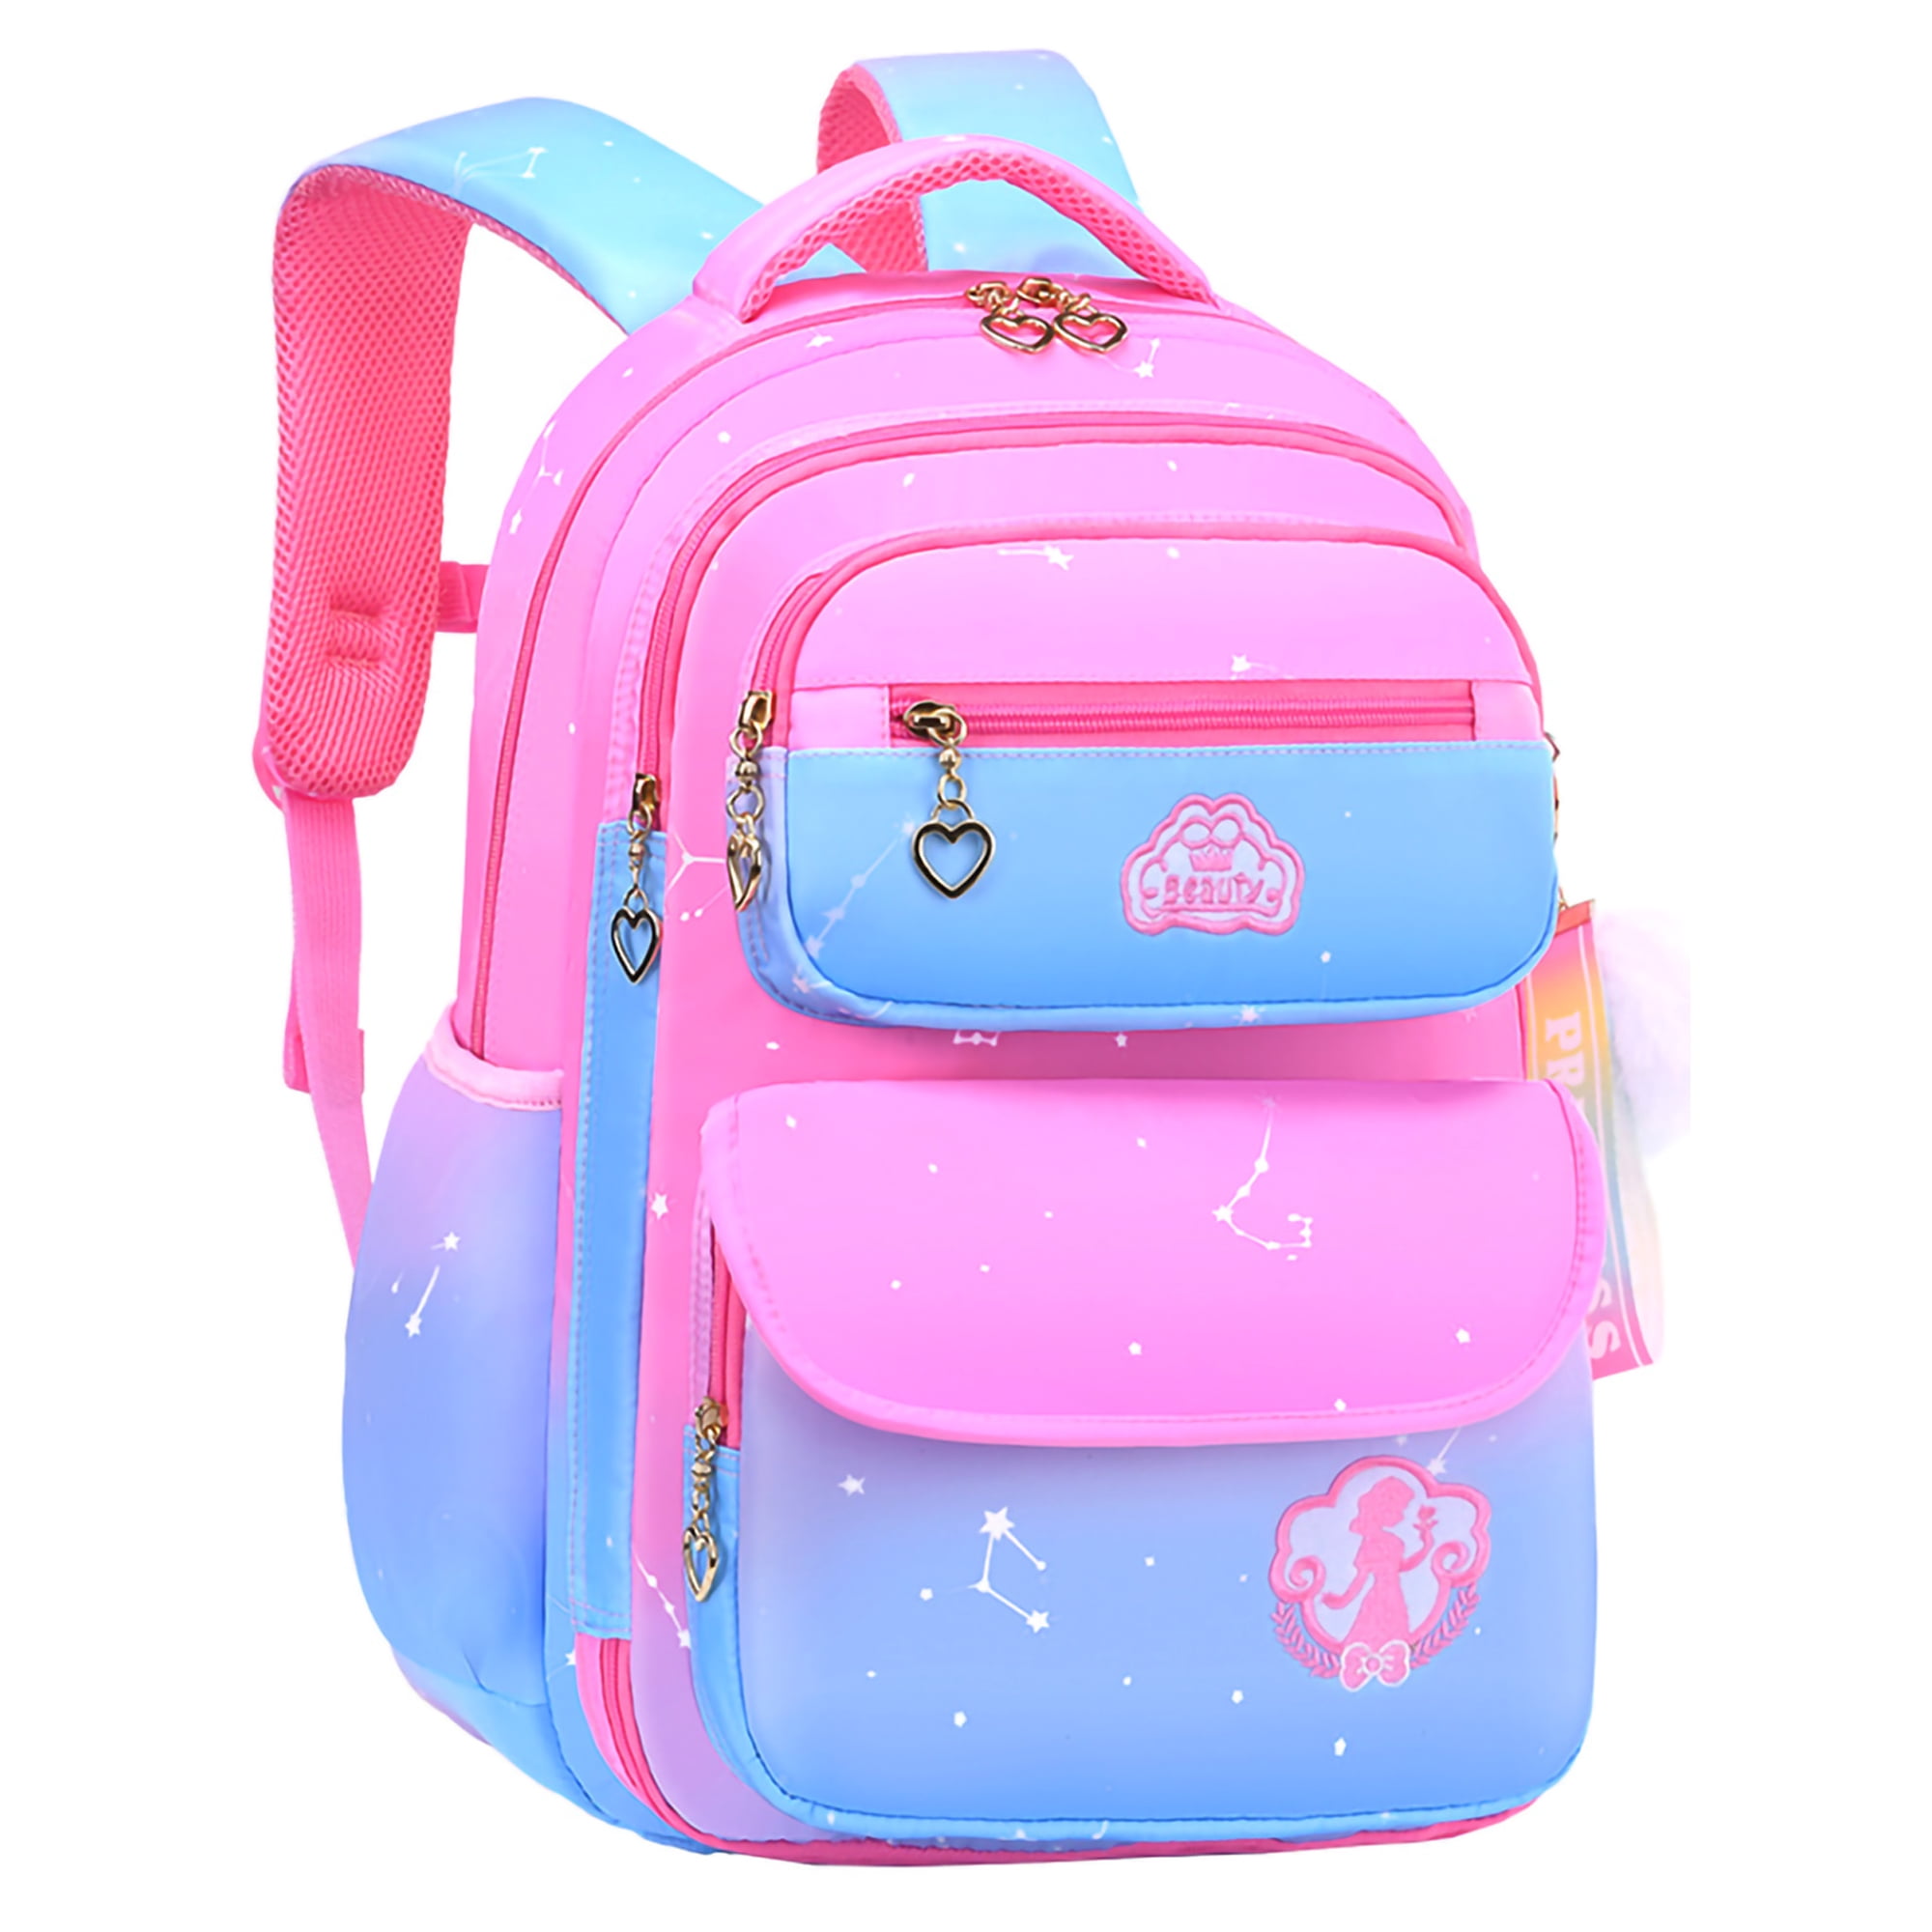 Lvelia School Bag Backpacks for Girls,Bookbags for Girls School  Gift,Waterproof School Bags,Pink